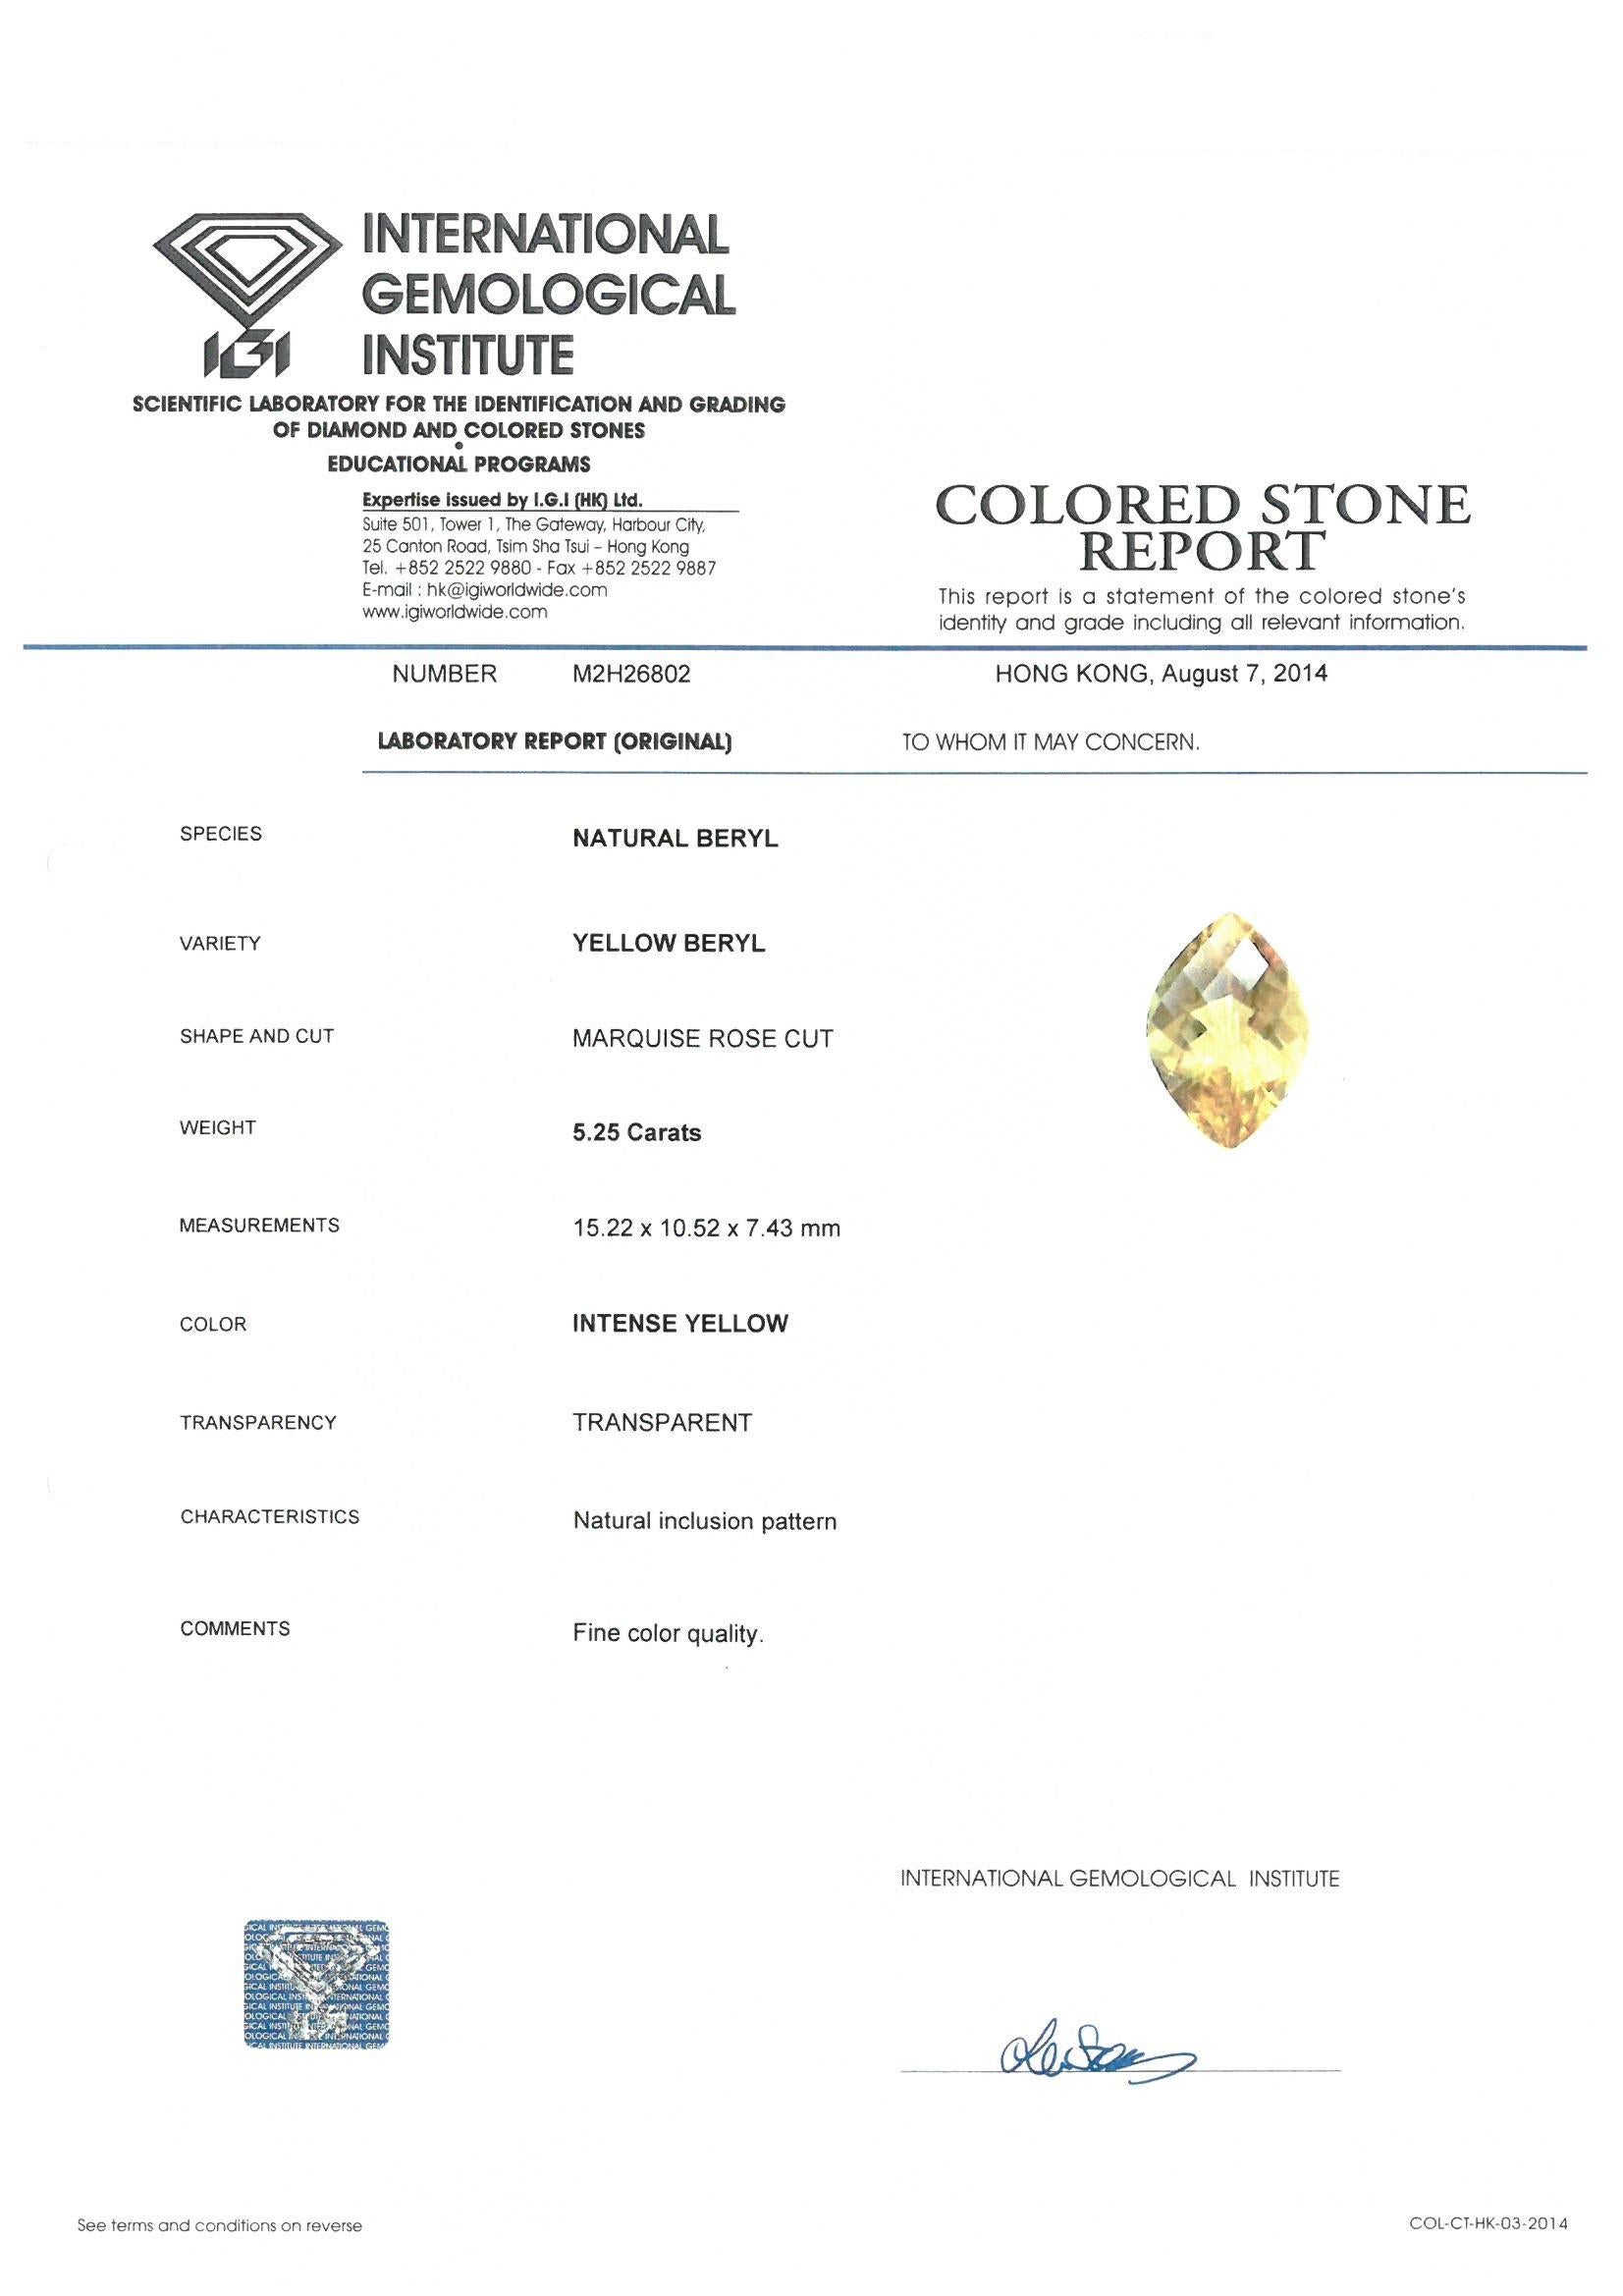 IGI Certified 5.25 Carat Yellow Beryl Engagement Ring in 18 Karat Gold 1